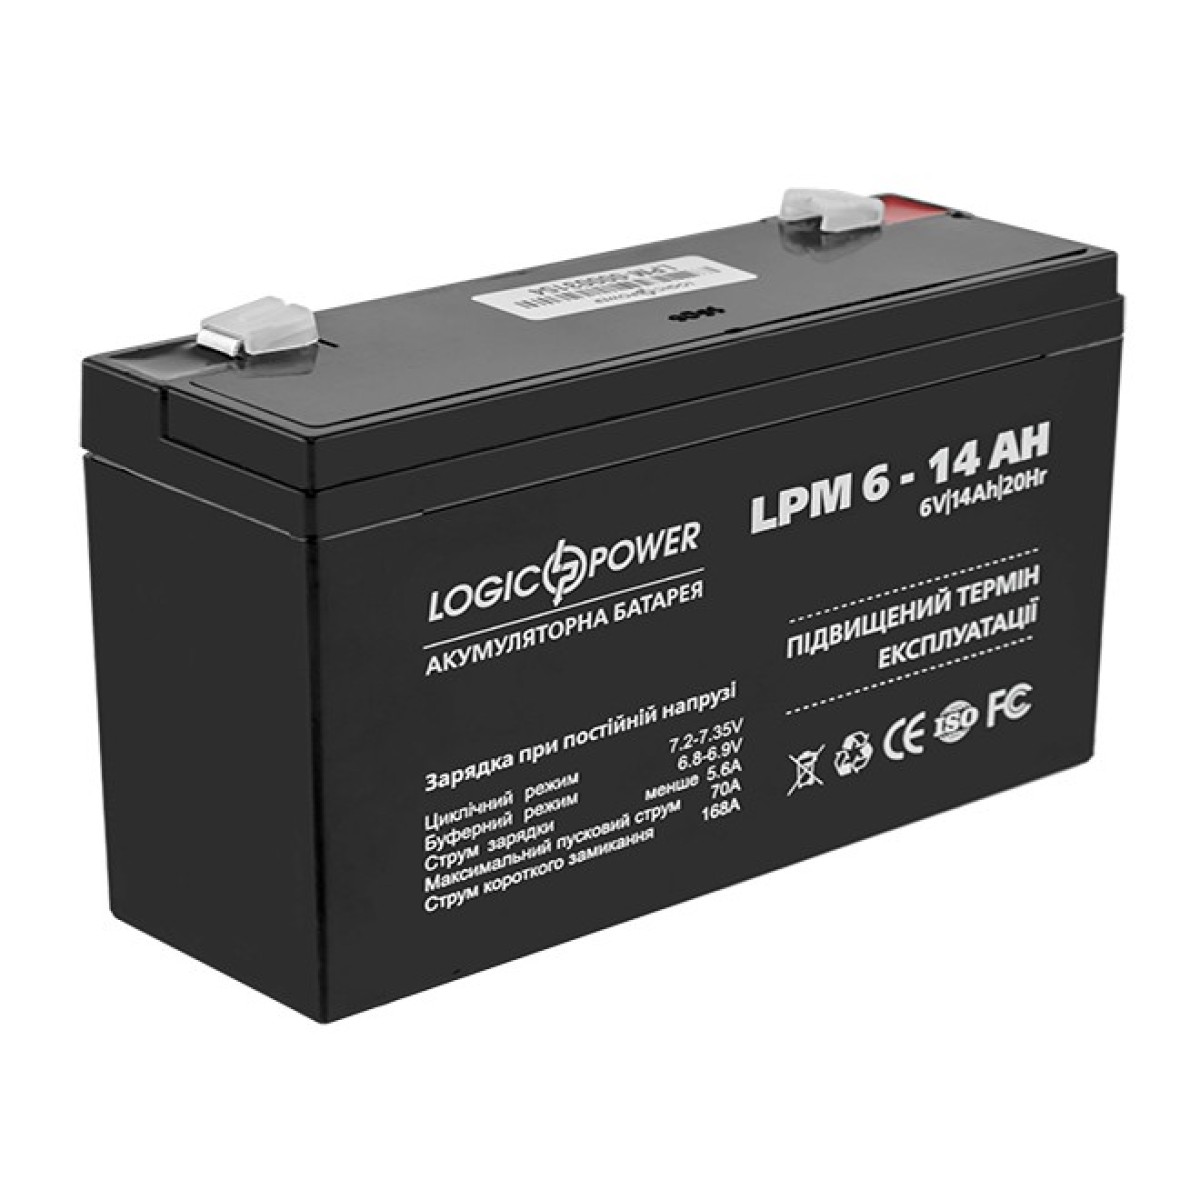 Акумулятор свинцево-кислотний LogicPower AGM LPM 6-14 AH 98_98.jpg - фото 1